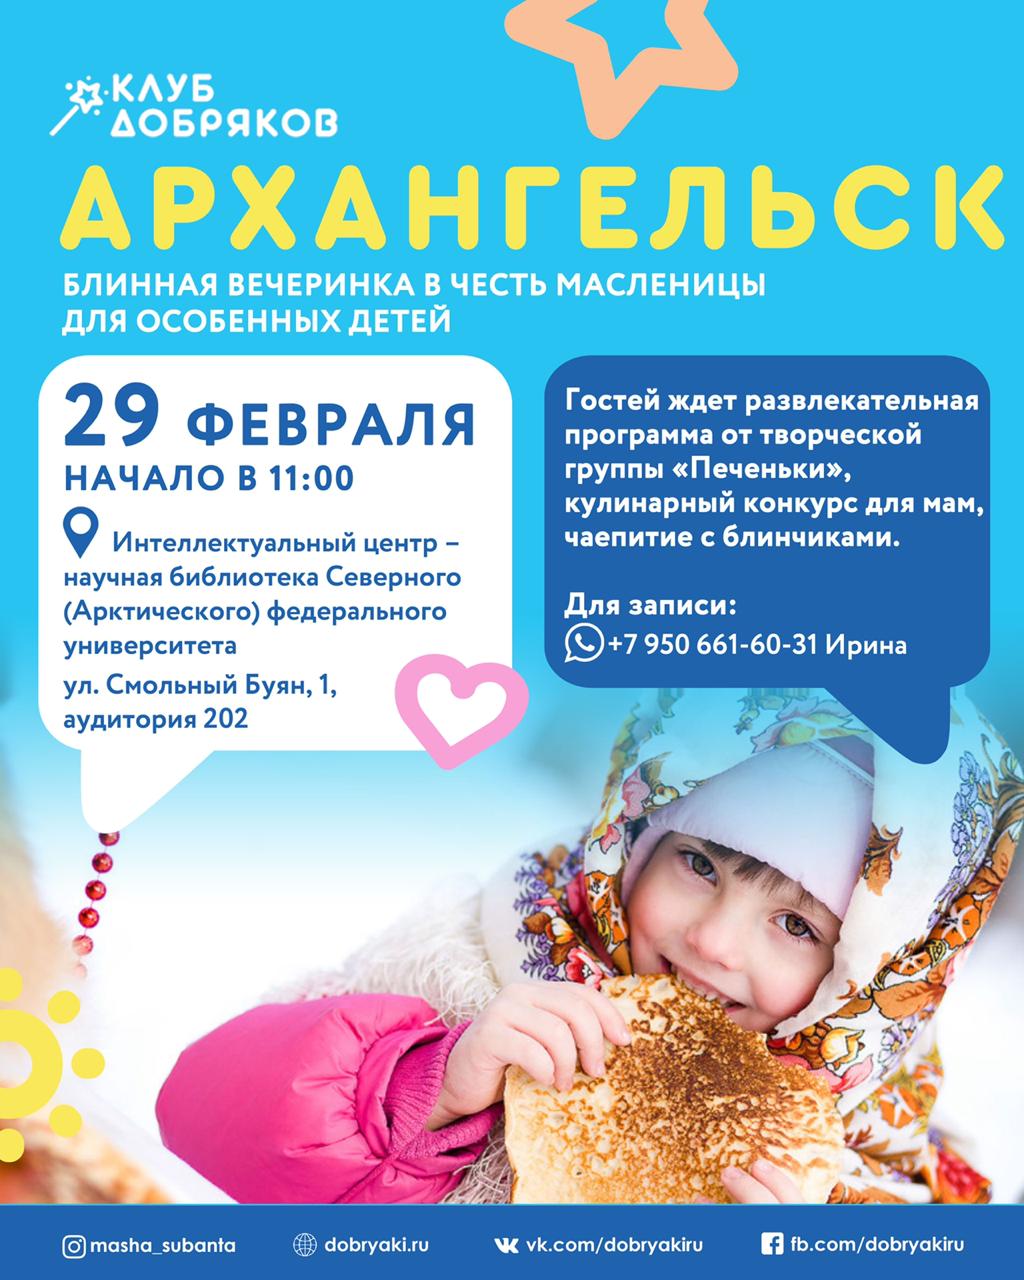 Добряки Архангельска приглашают особенных детей на блинную вечеринку